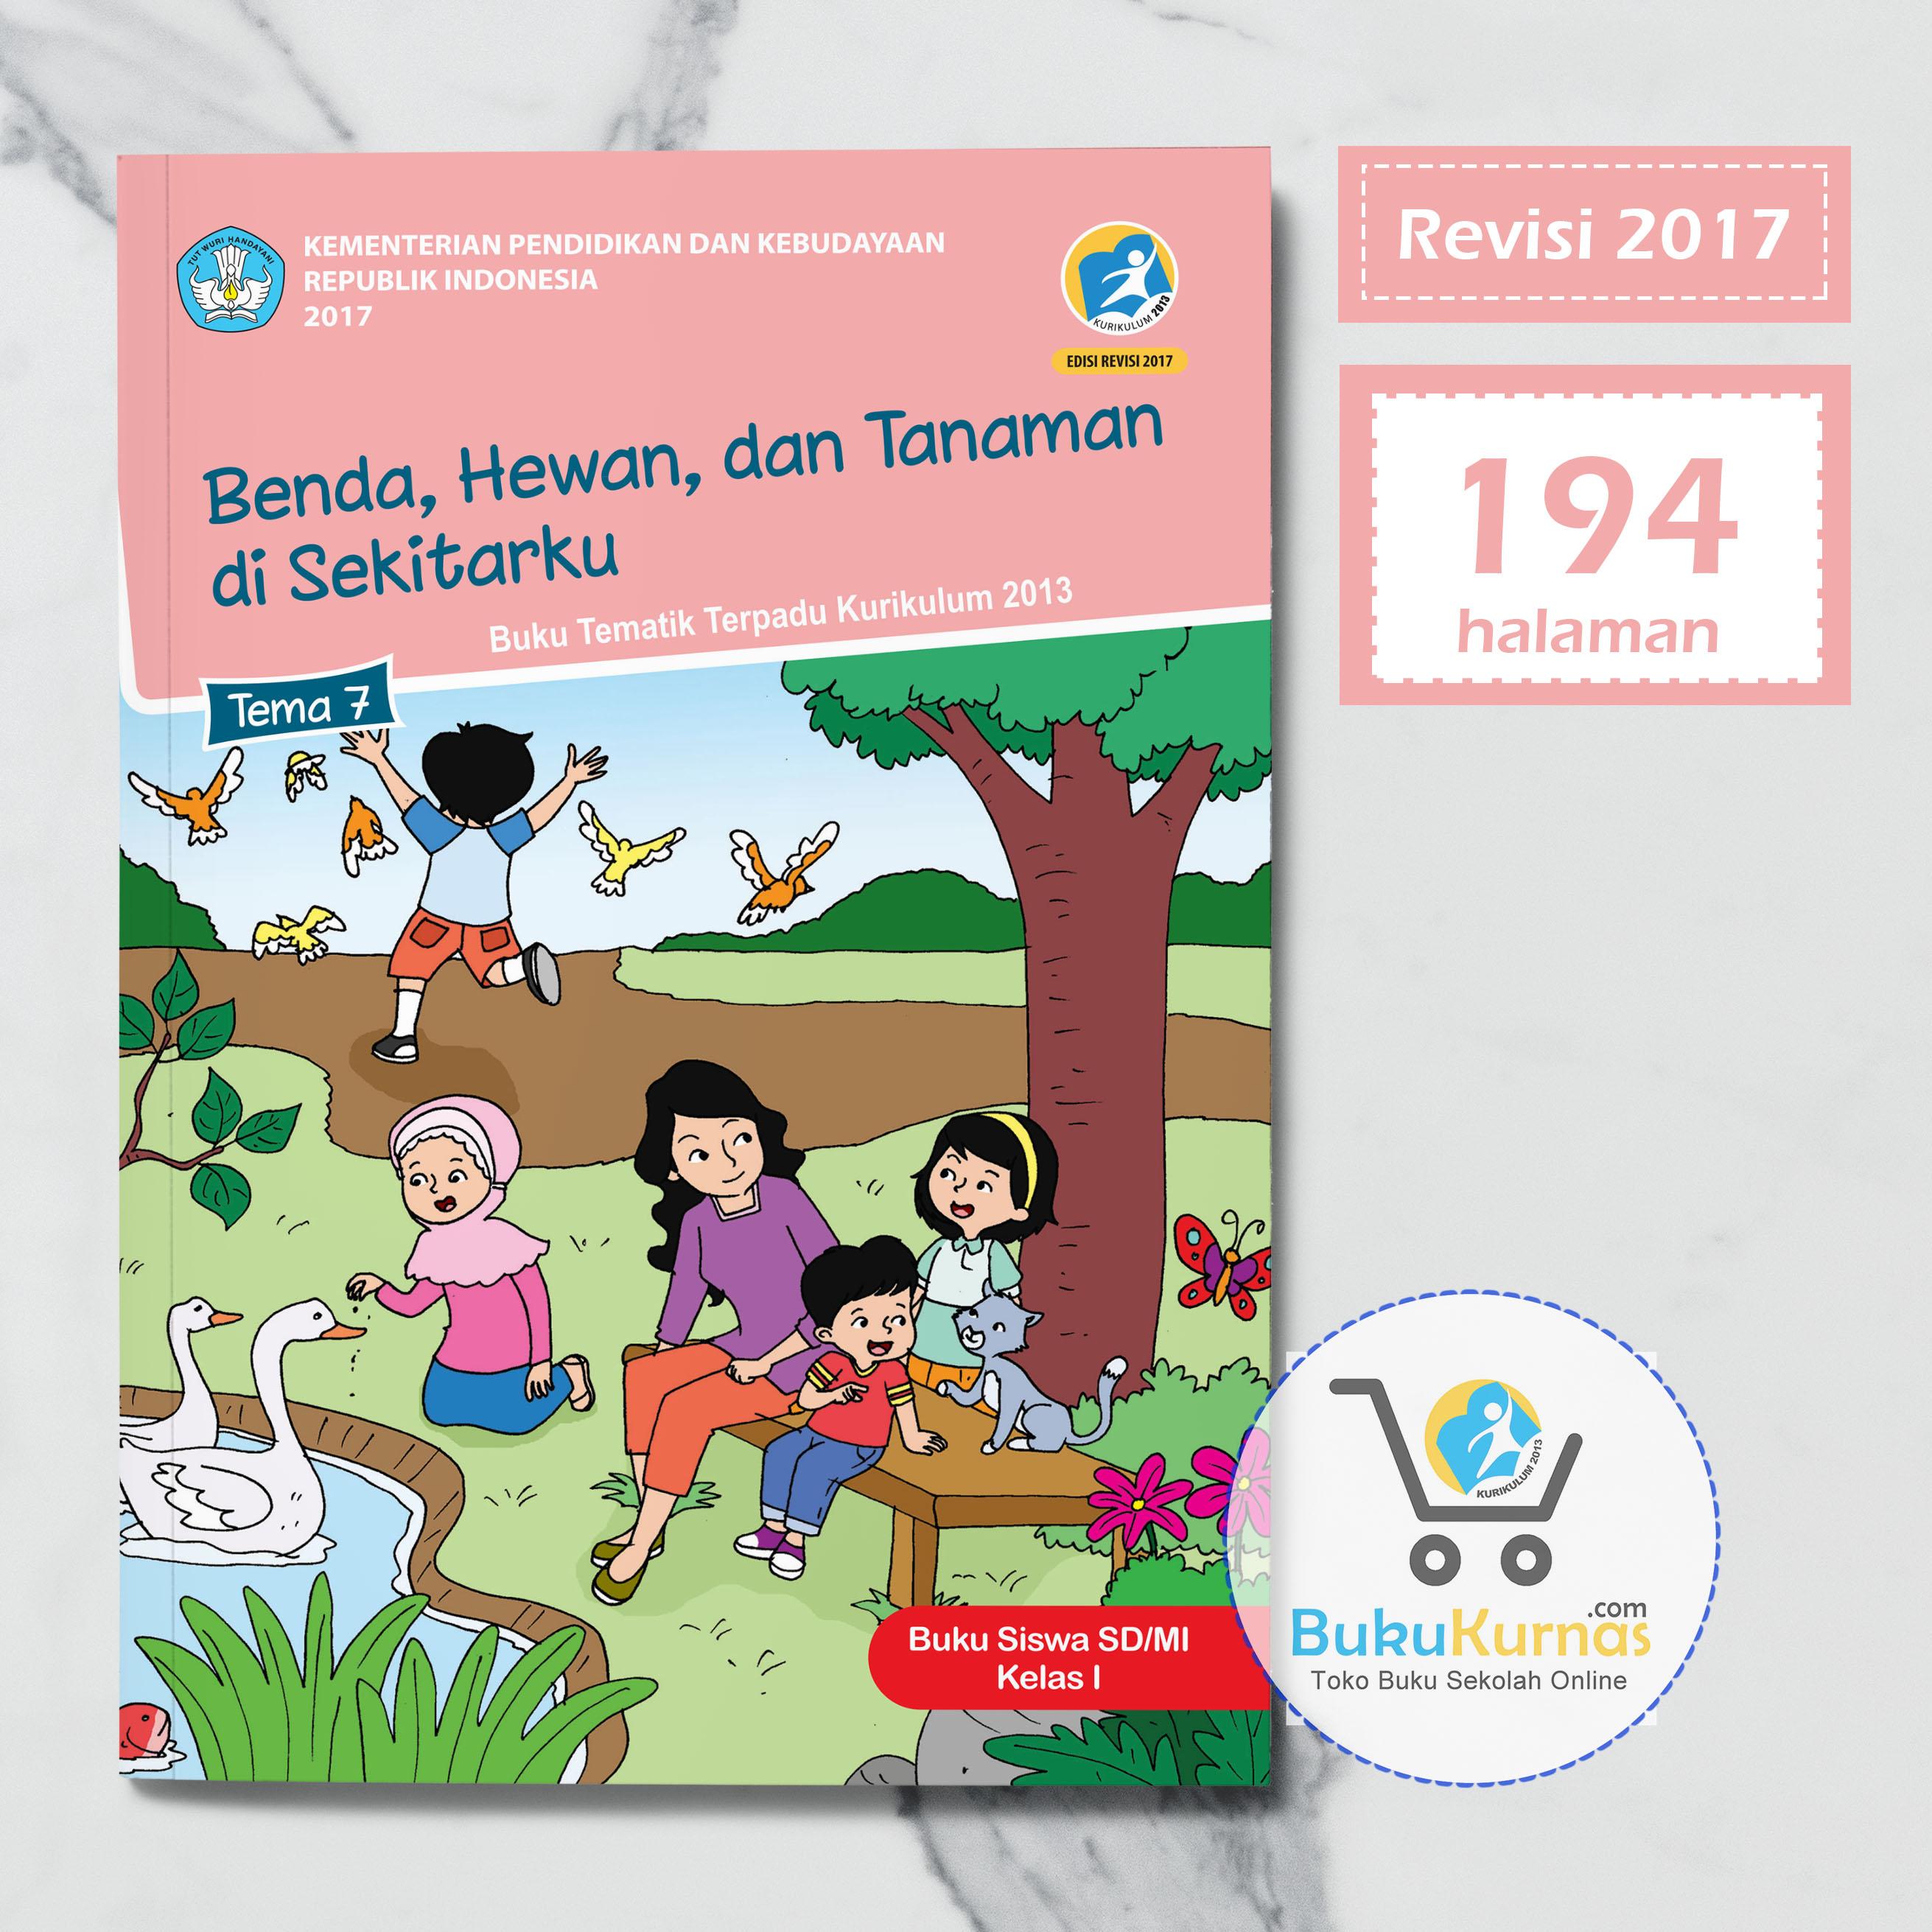 Buku Tematik SD Kelas 1 Tema 7 Benda Hewan dan Tanaman di Sekitarku K13 Revisi 2017